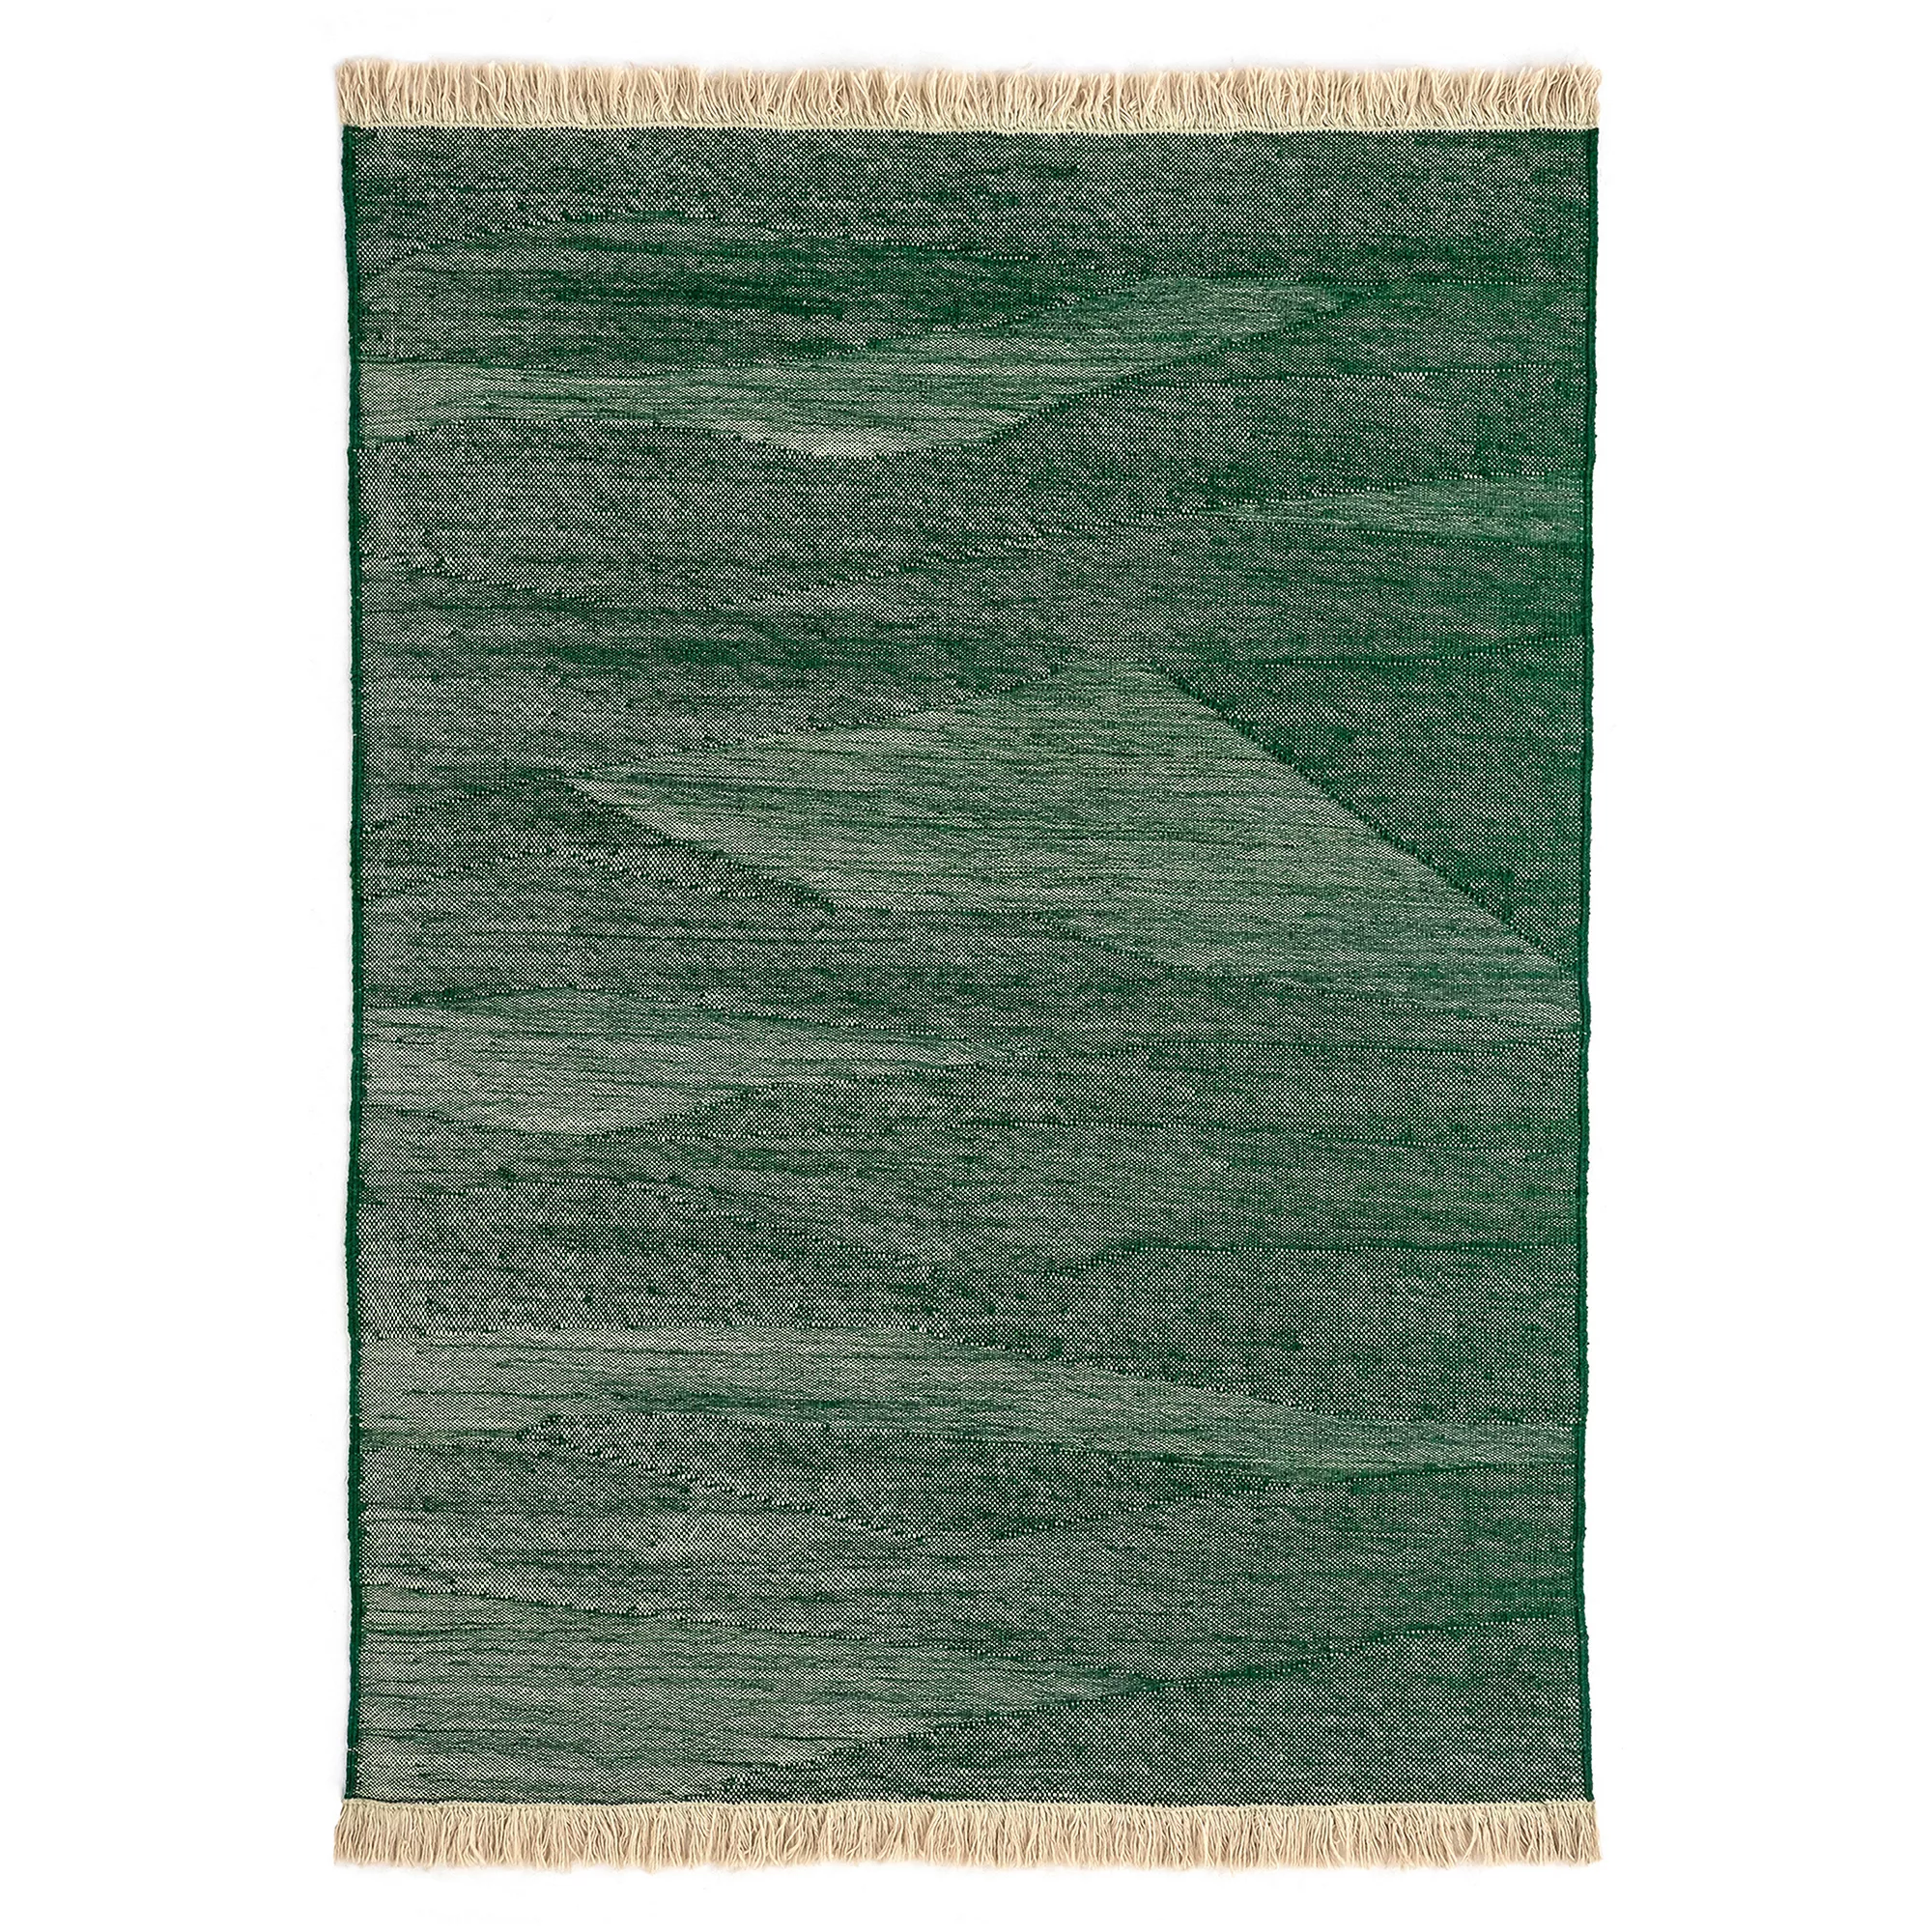 Nanimarquina - Telares Pine Teppich 200x300cm - grün/handgewebt/Ausführung günstig online kaufen